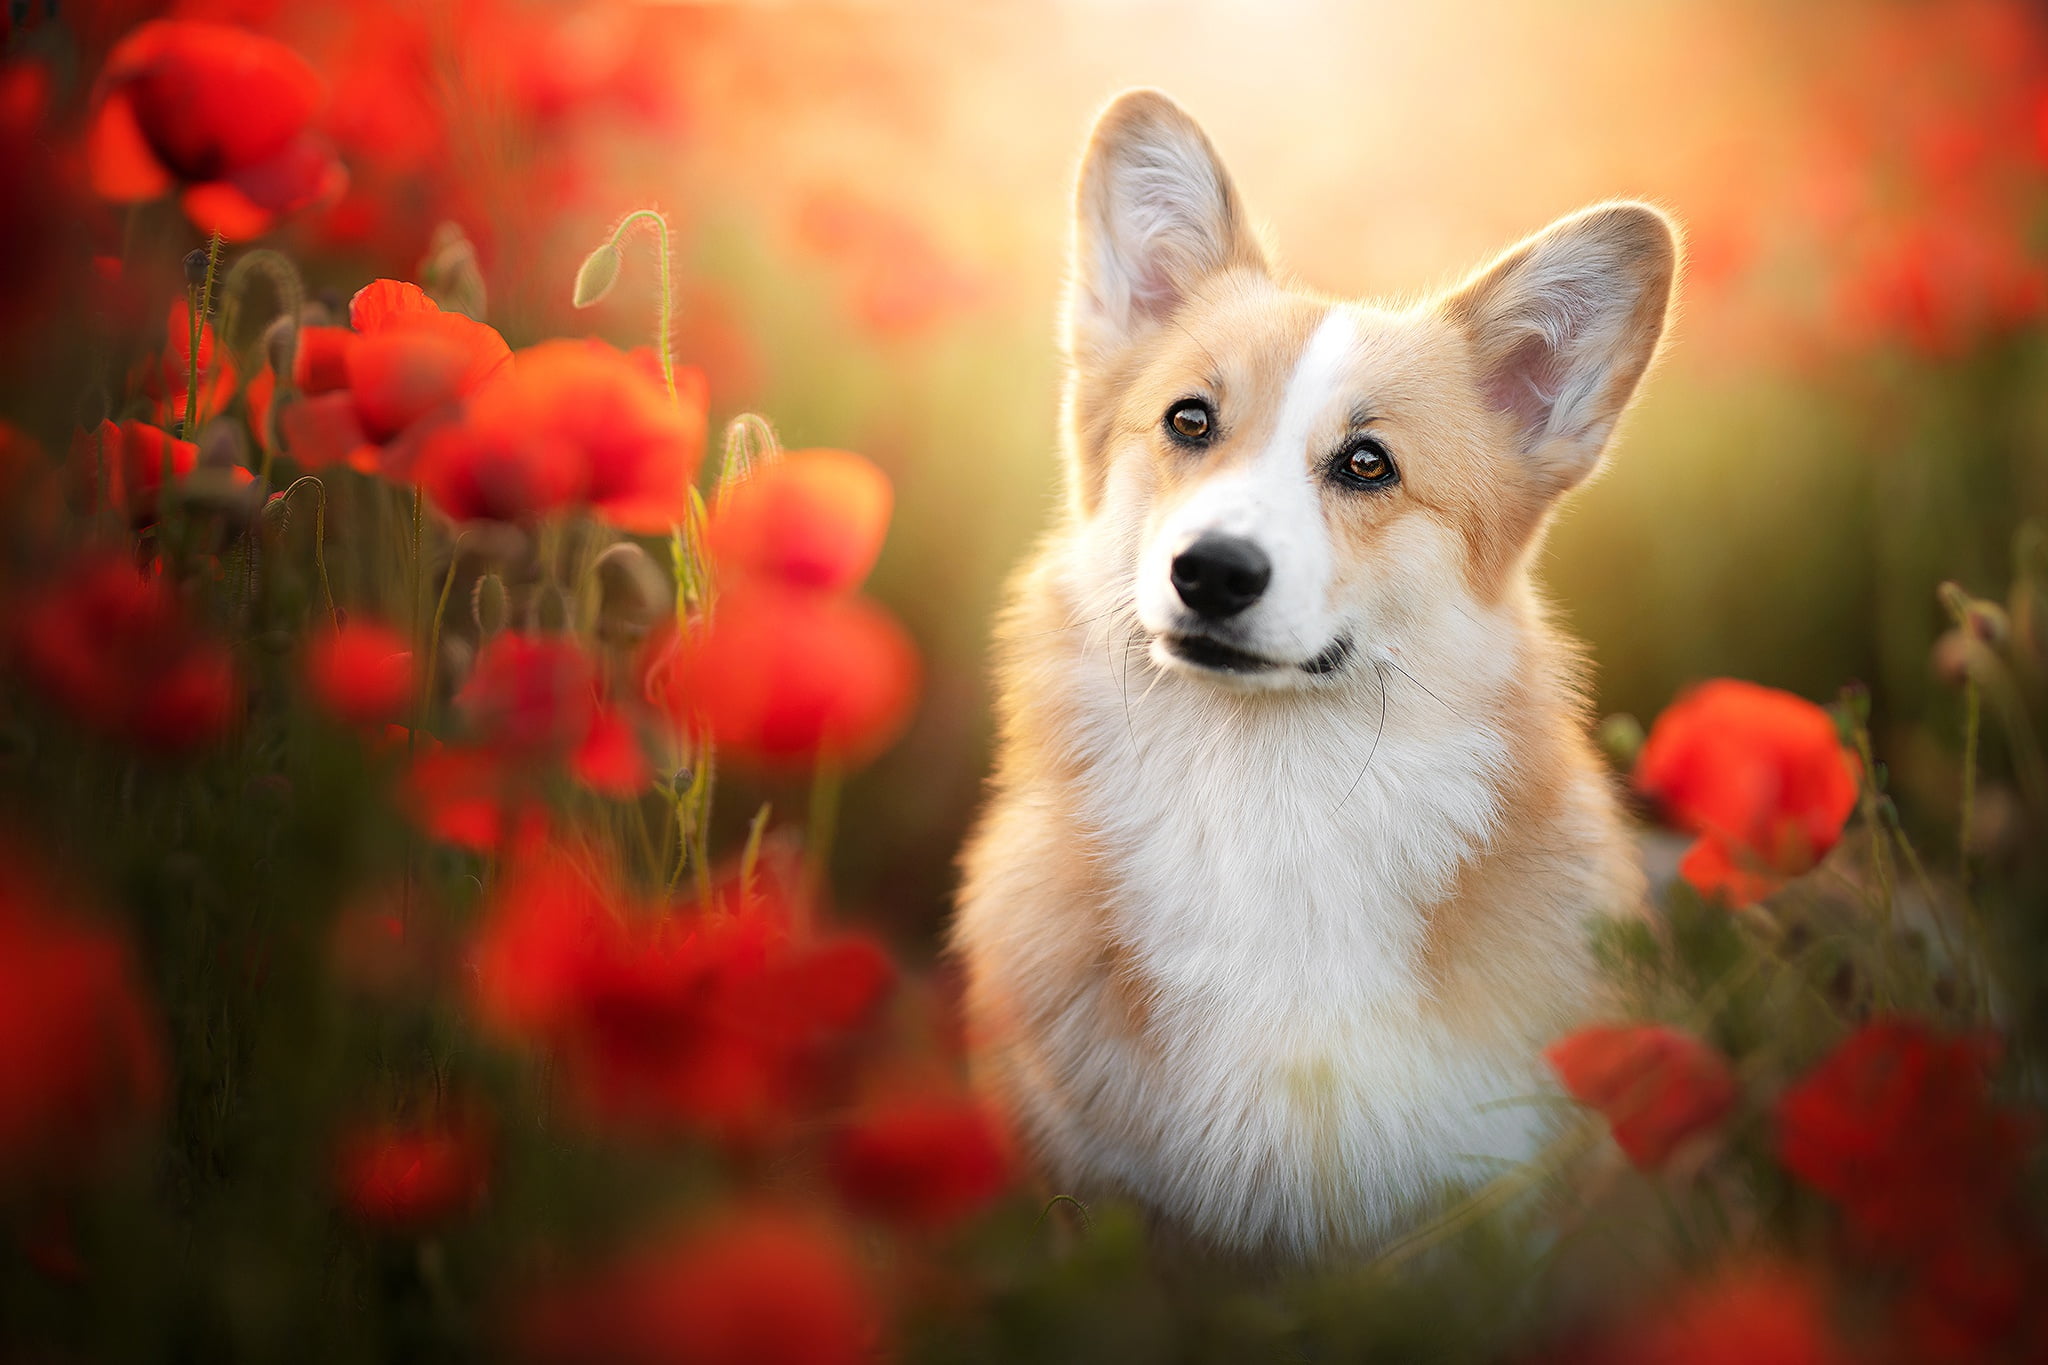 Dogs, Corgi, Flower, Pet, Poppy, Red Flower